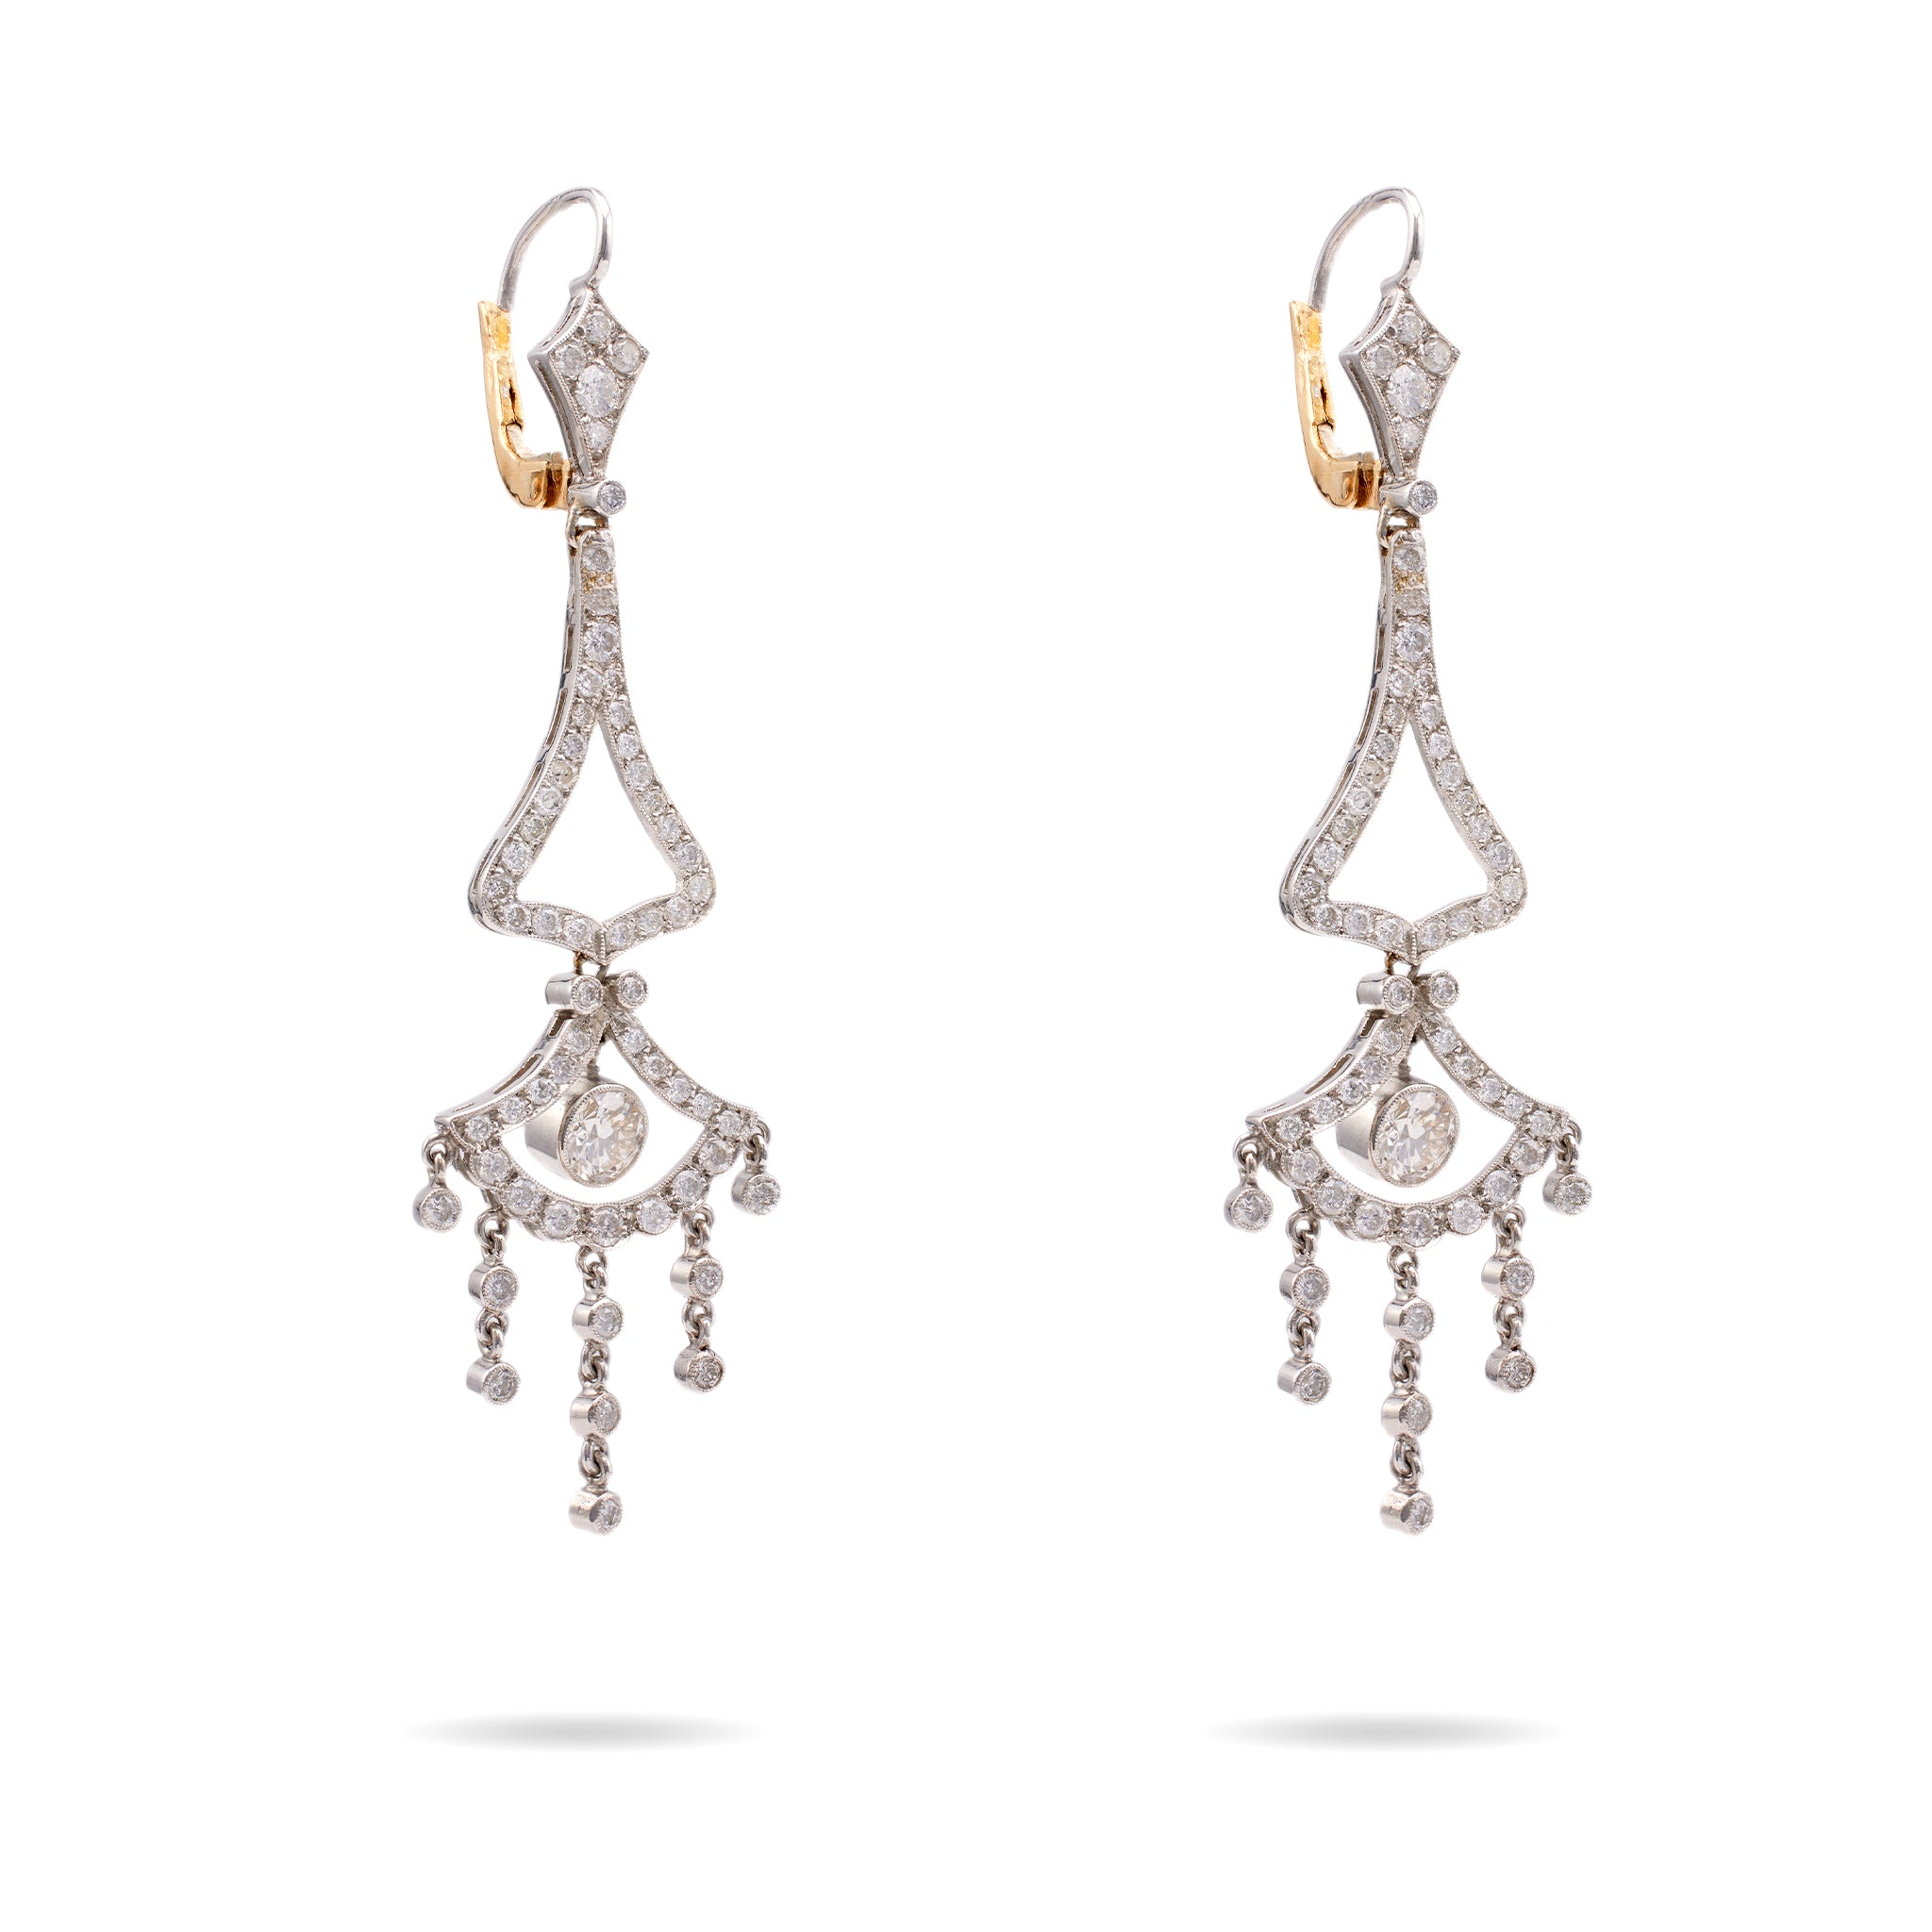 Pair of Art Deco Inspired Diamond Platinum Chandelier Earrings Earrings Jack Weir & Sons   